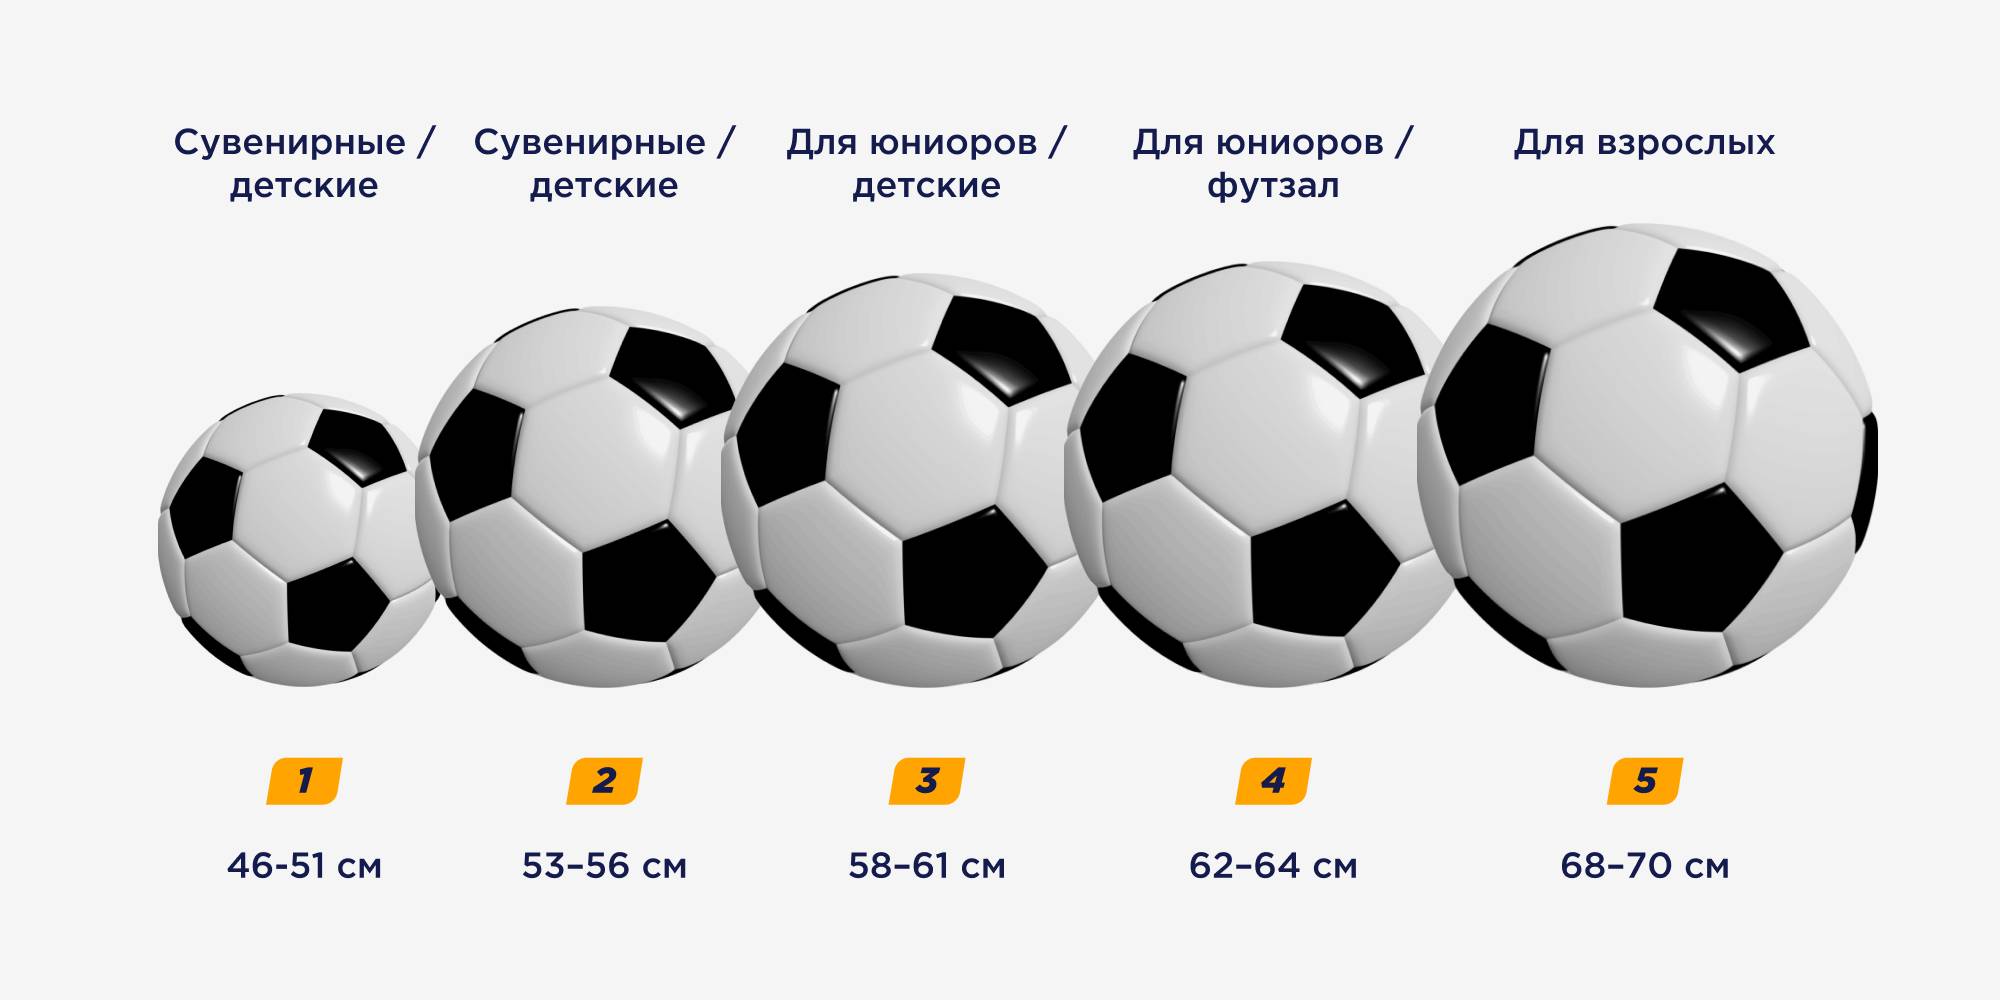 Какие бывают футбольные мячи. чем отличаются тренировочные футбольные мячи от обычных? как выбрать качественный футбольный мяч